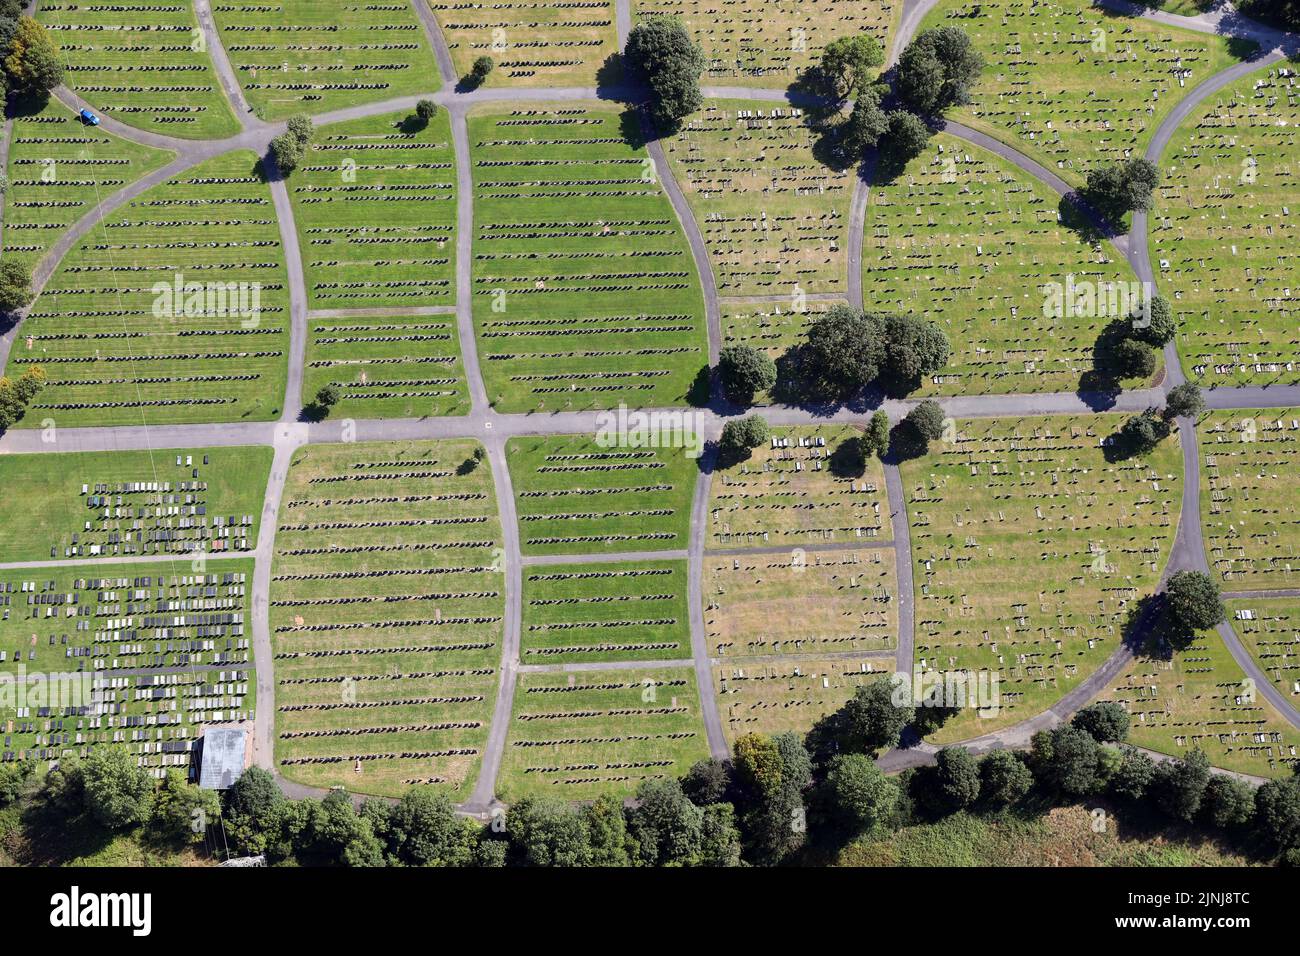 Vue aérienne d'un cimetière public à Poulton-le-Fylde, Lancashire, Royaume-Uni Banque D'Images